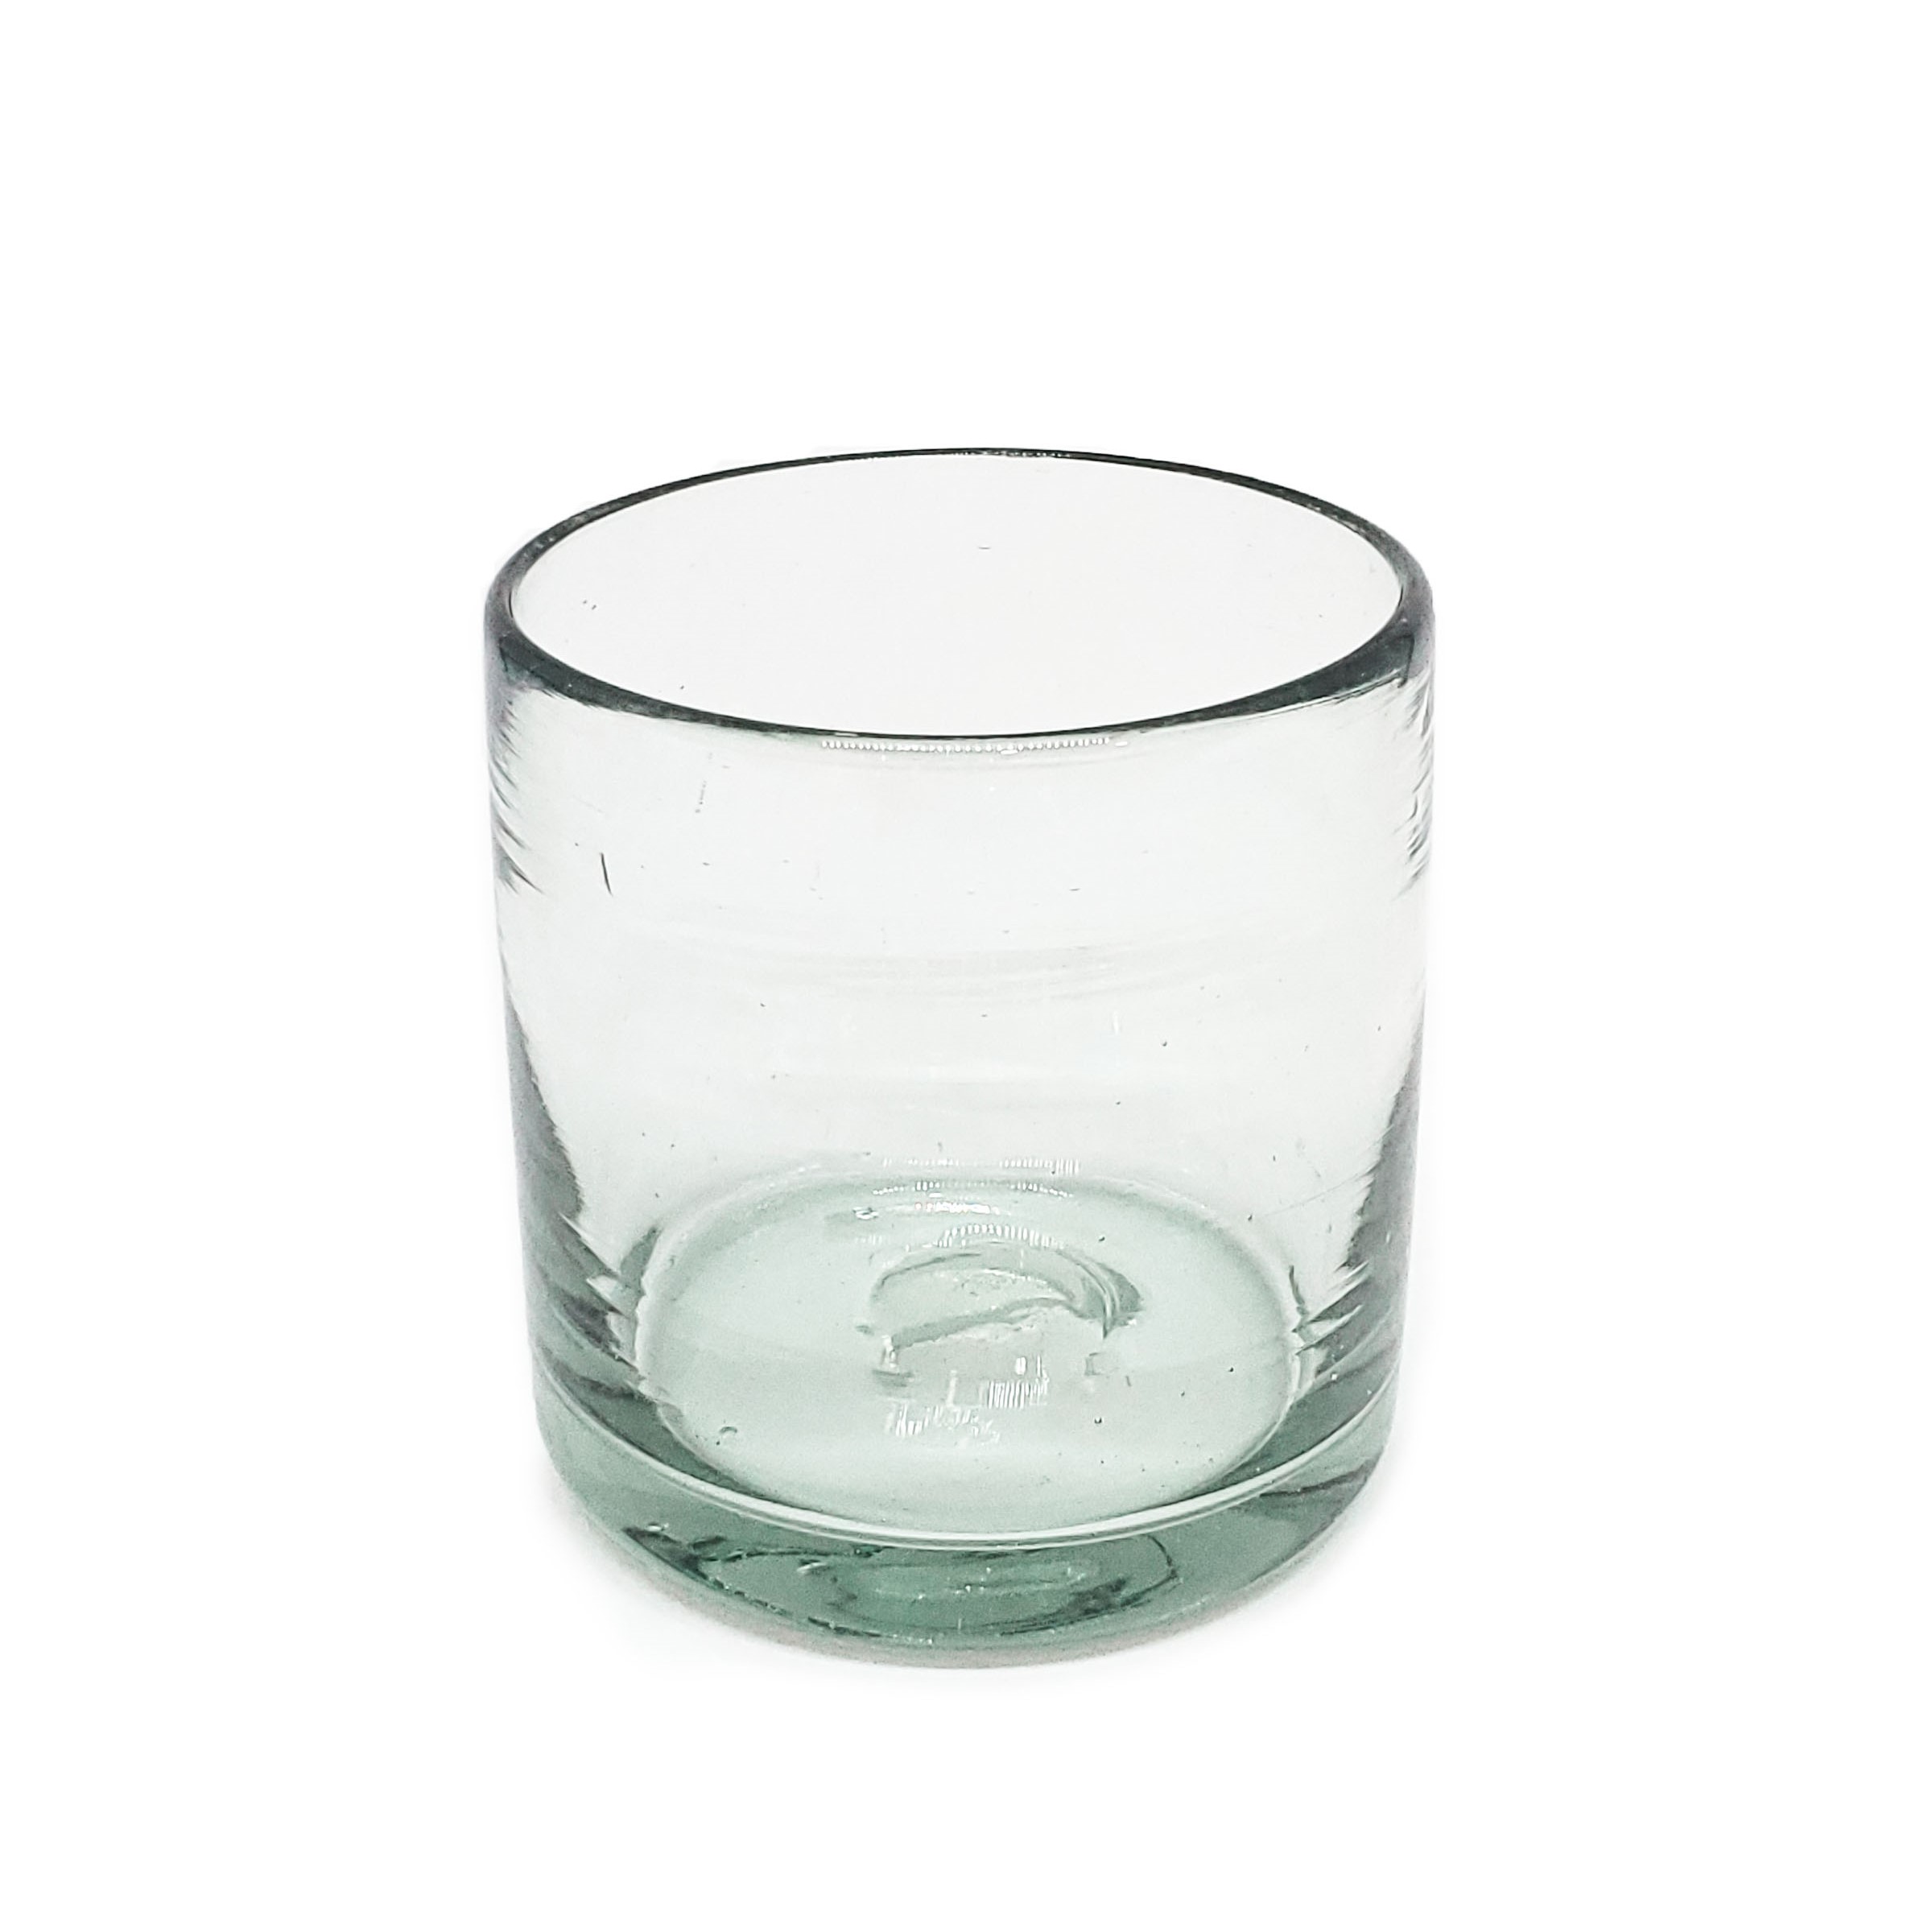 VIDRIO SOPLADO al Mayoreo / vasos DOF 8oz Transparentes / Éstos artesanales vasos le darán un toque clásico a su bebida favorita.